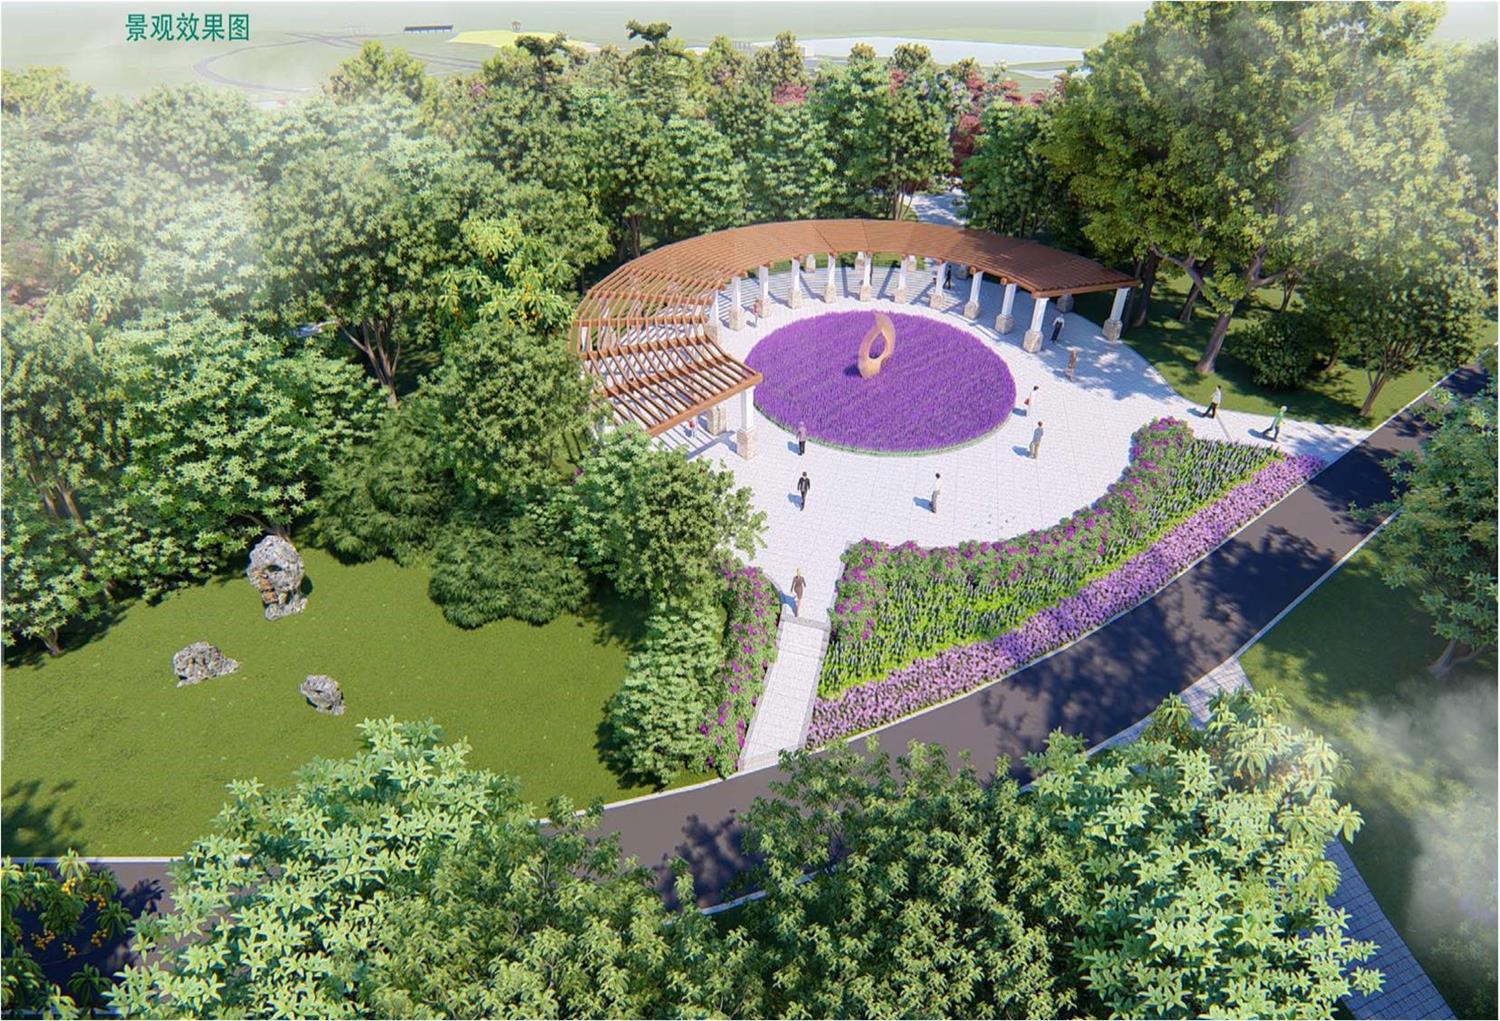 合肥植物园扩建二期景观绿化工程